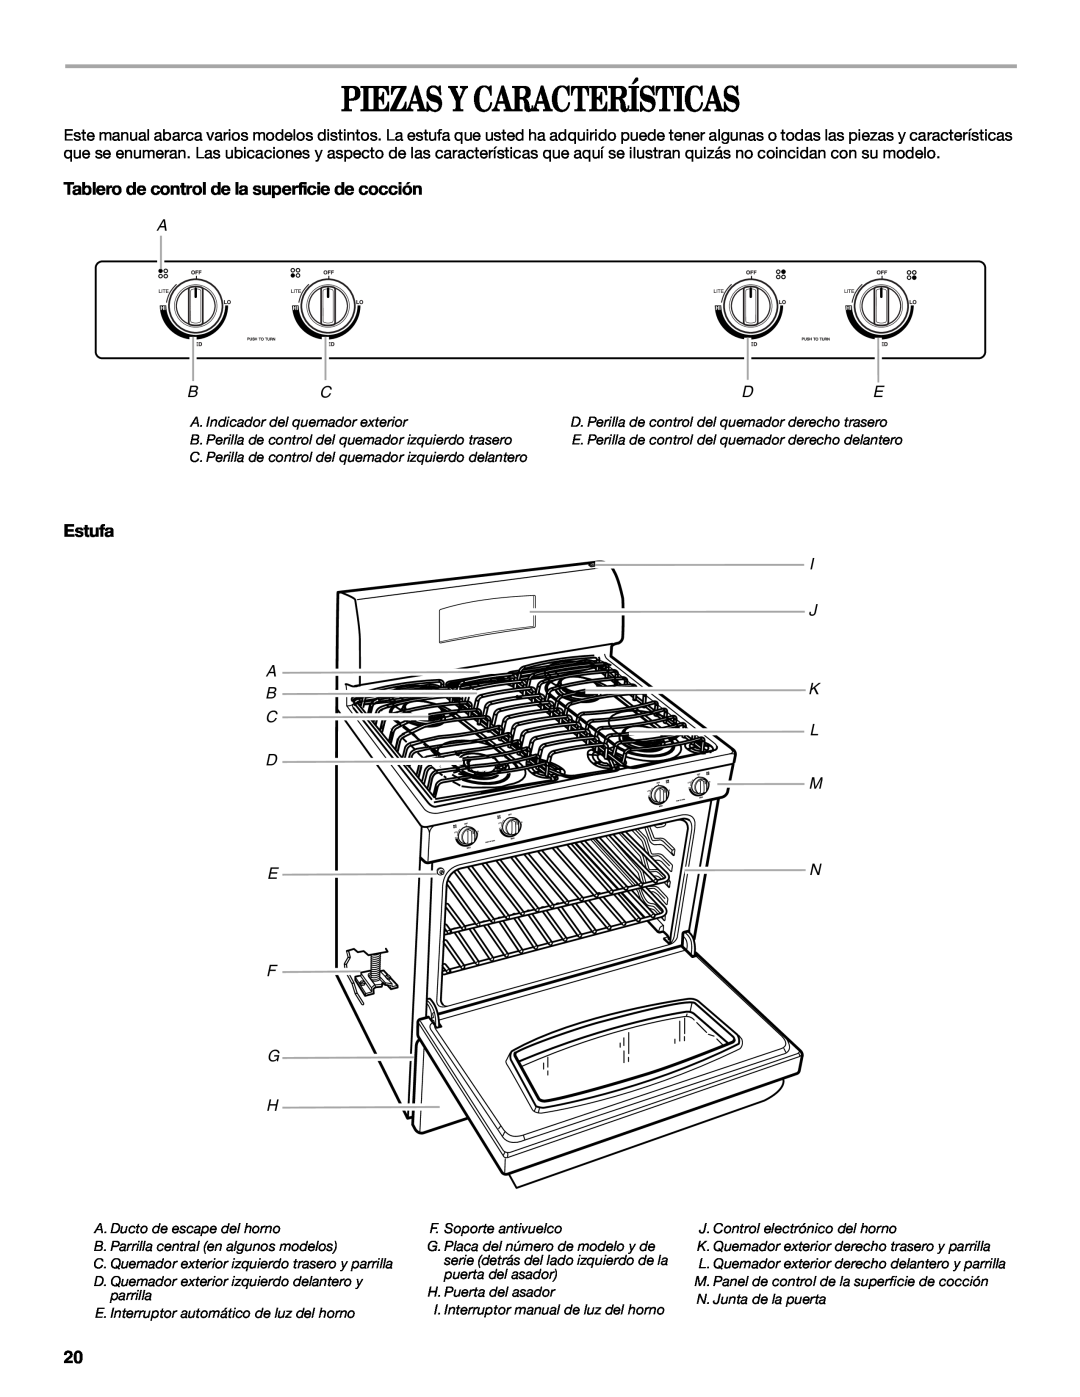 Whirlpool SF315PEPB3 manual Piezas Y Características, Tablero de control de la superficie de cocción, Estufa, F G H 